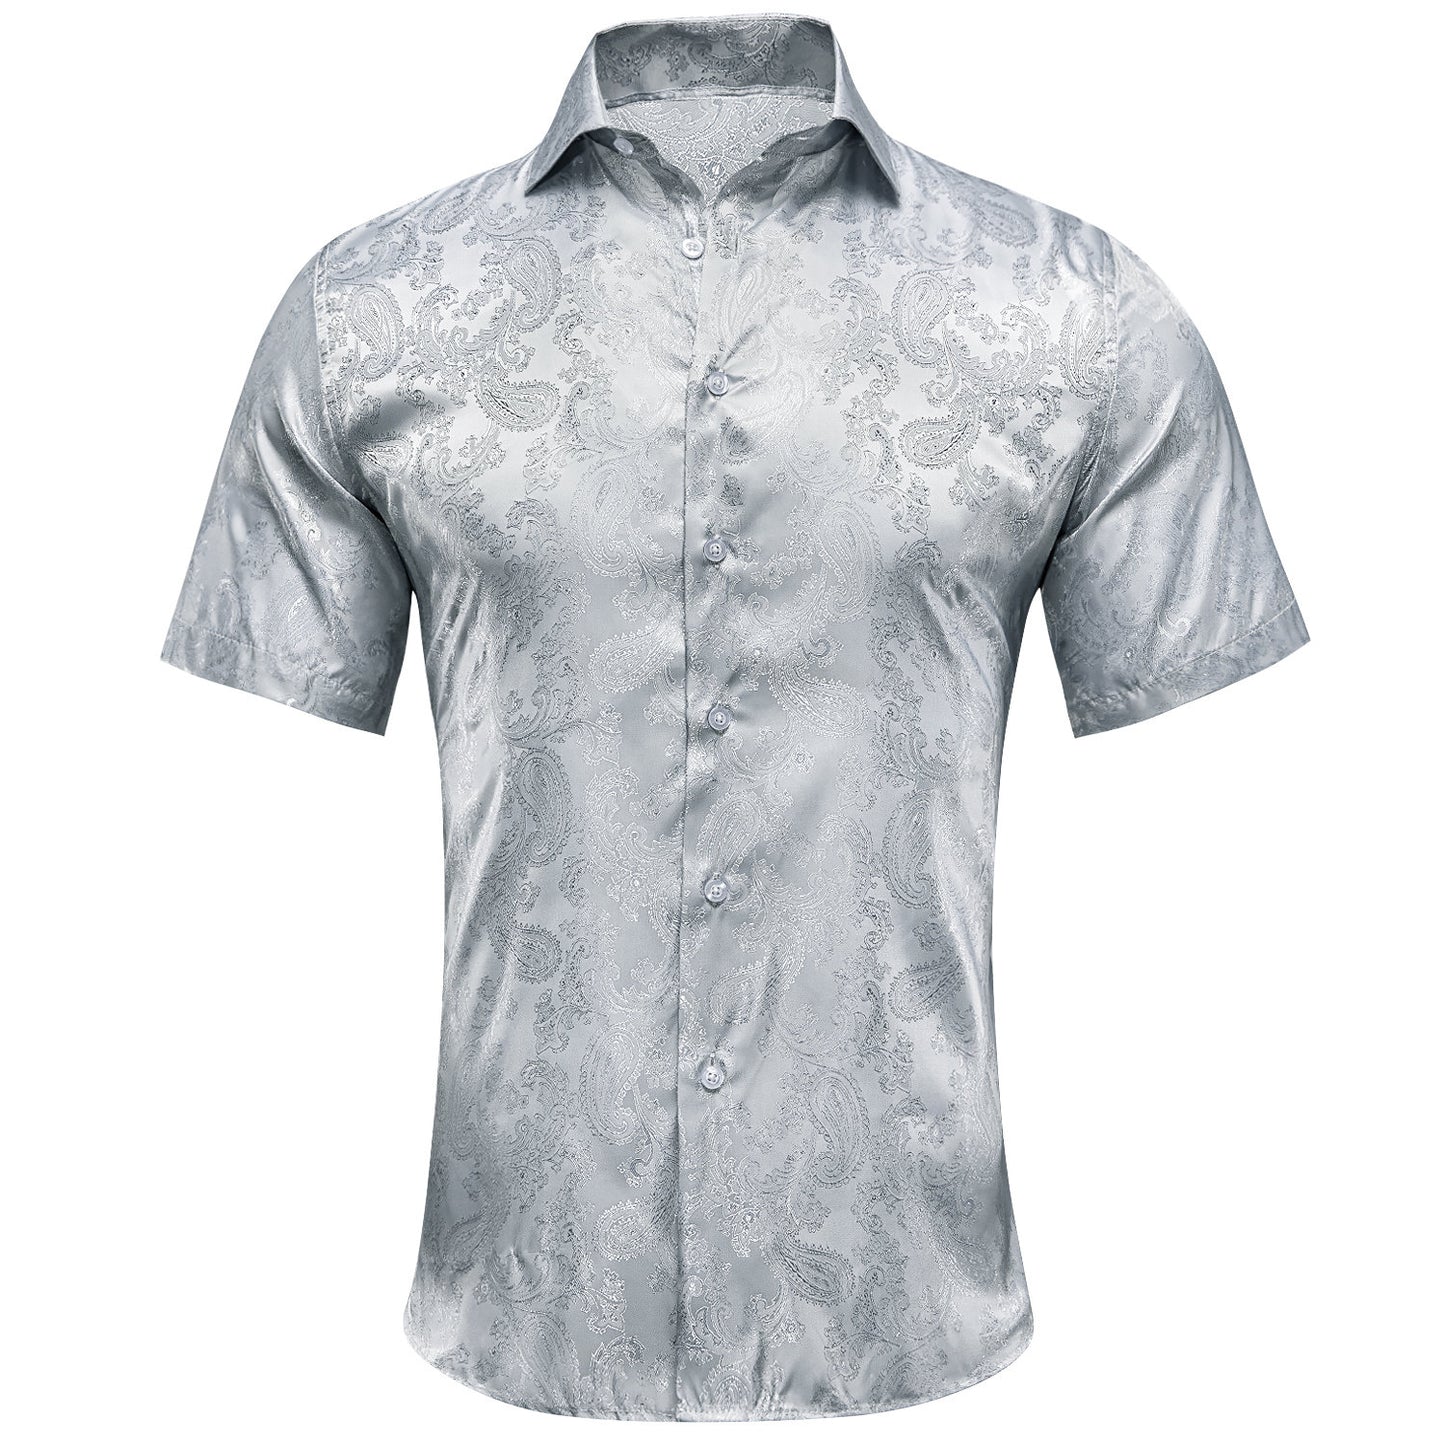 Men's Dress Shirt Long Sleeve